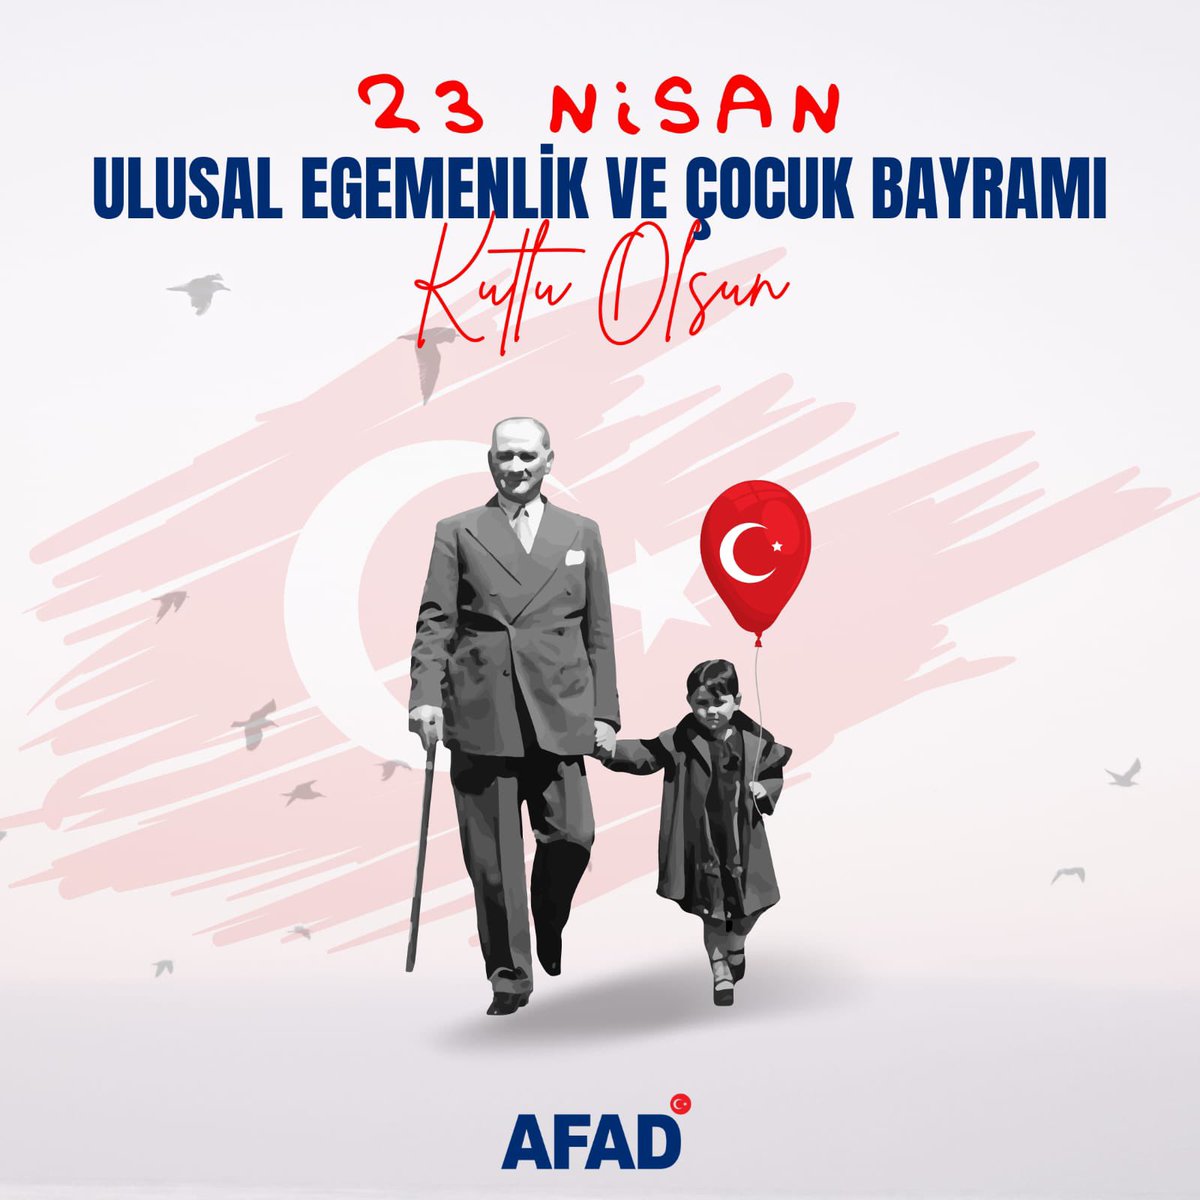 👧🏻👦🏻 Bugün, #23Nisan Ulusal Egemenlik ve Çocuk Bayramı Gazi meclisimizin 1️⃣0️⃣4️⃣. kuruluş yıldönümününde, çocuklarımız başta olmak üzere tüm Milletimizin bayramını kutluyoruz. Bu günü çocuklara armağan eden Gazi Mustafa Kemal Atatürk başta olmak üzere tarihimizin şanlı…